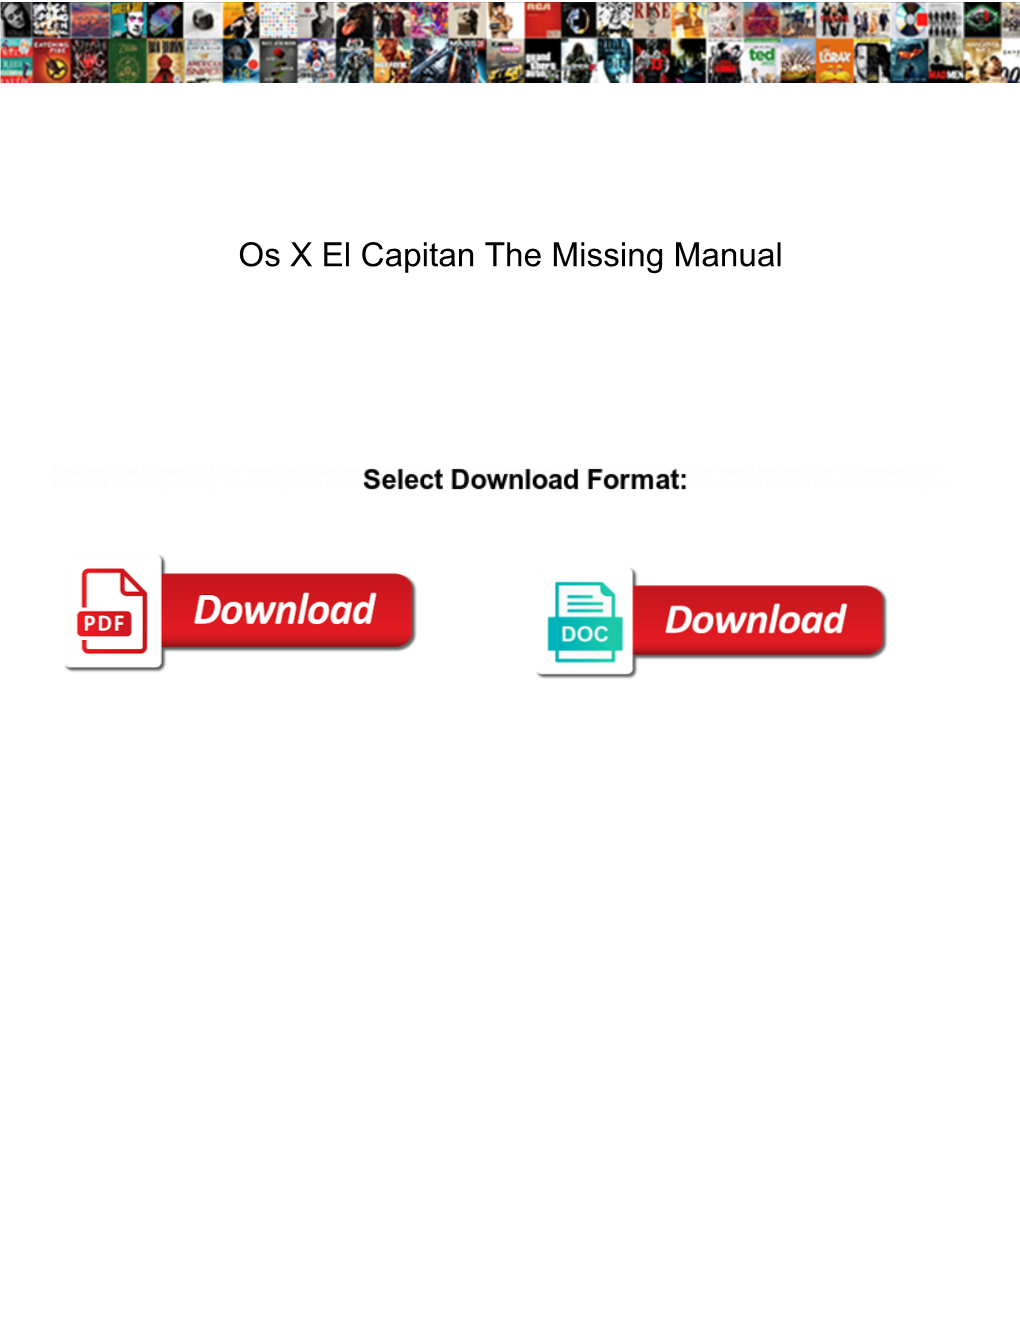 Os X El Capitan the Missing Manual